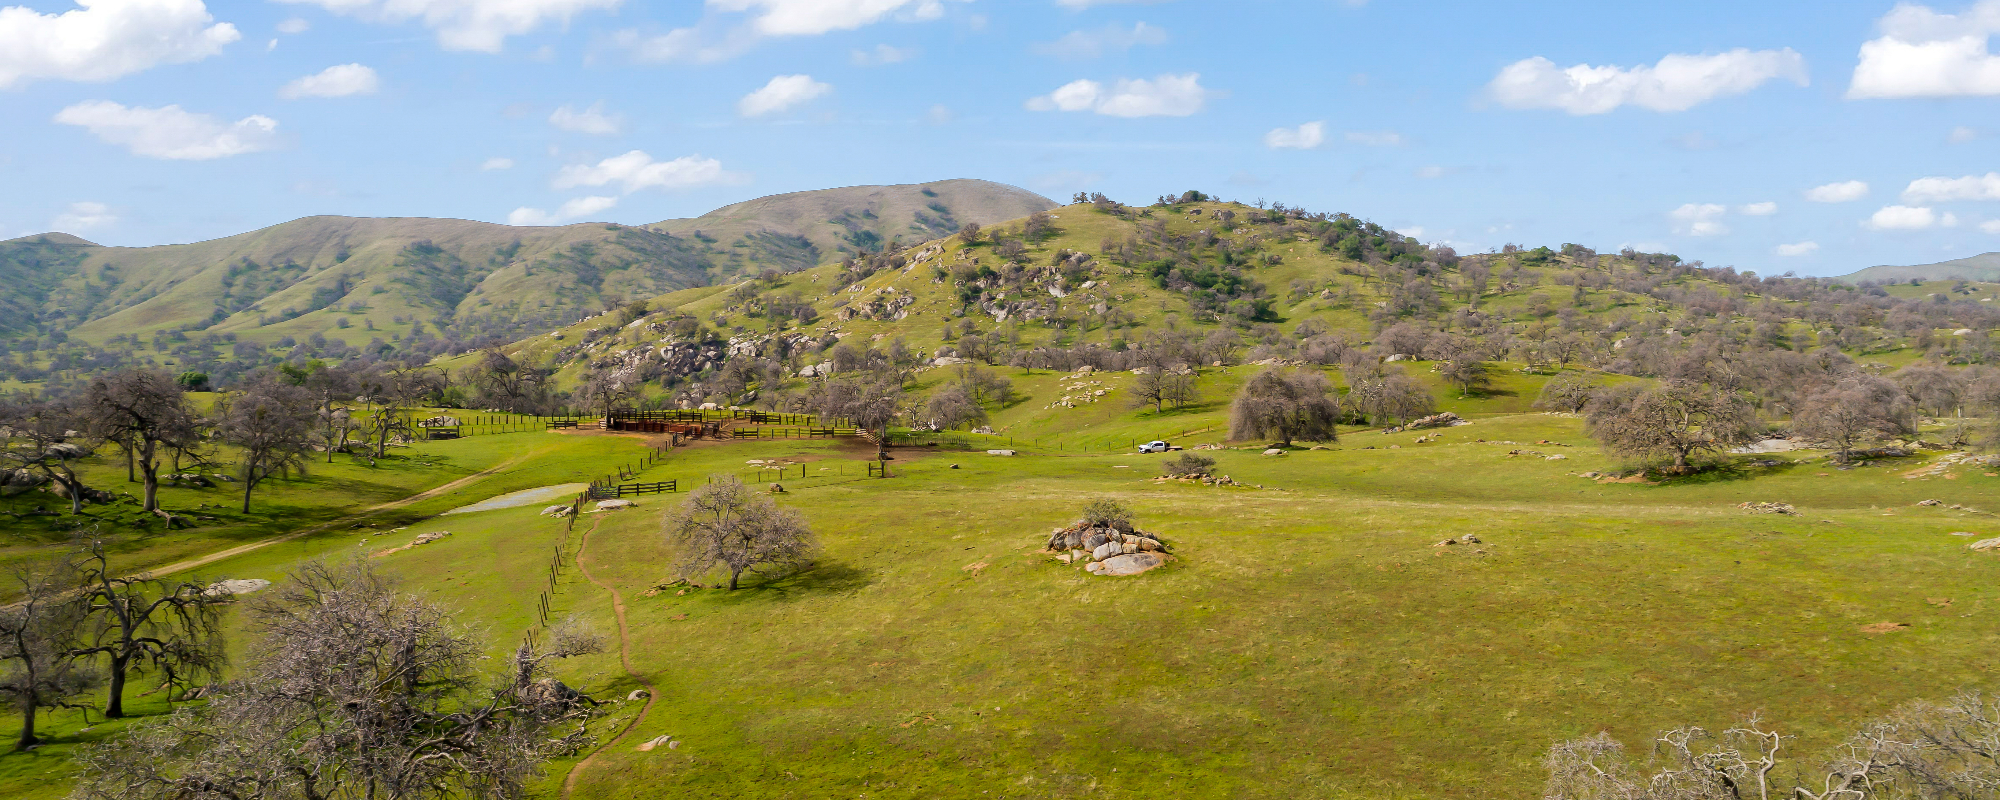 Los Robles Ranch 